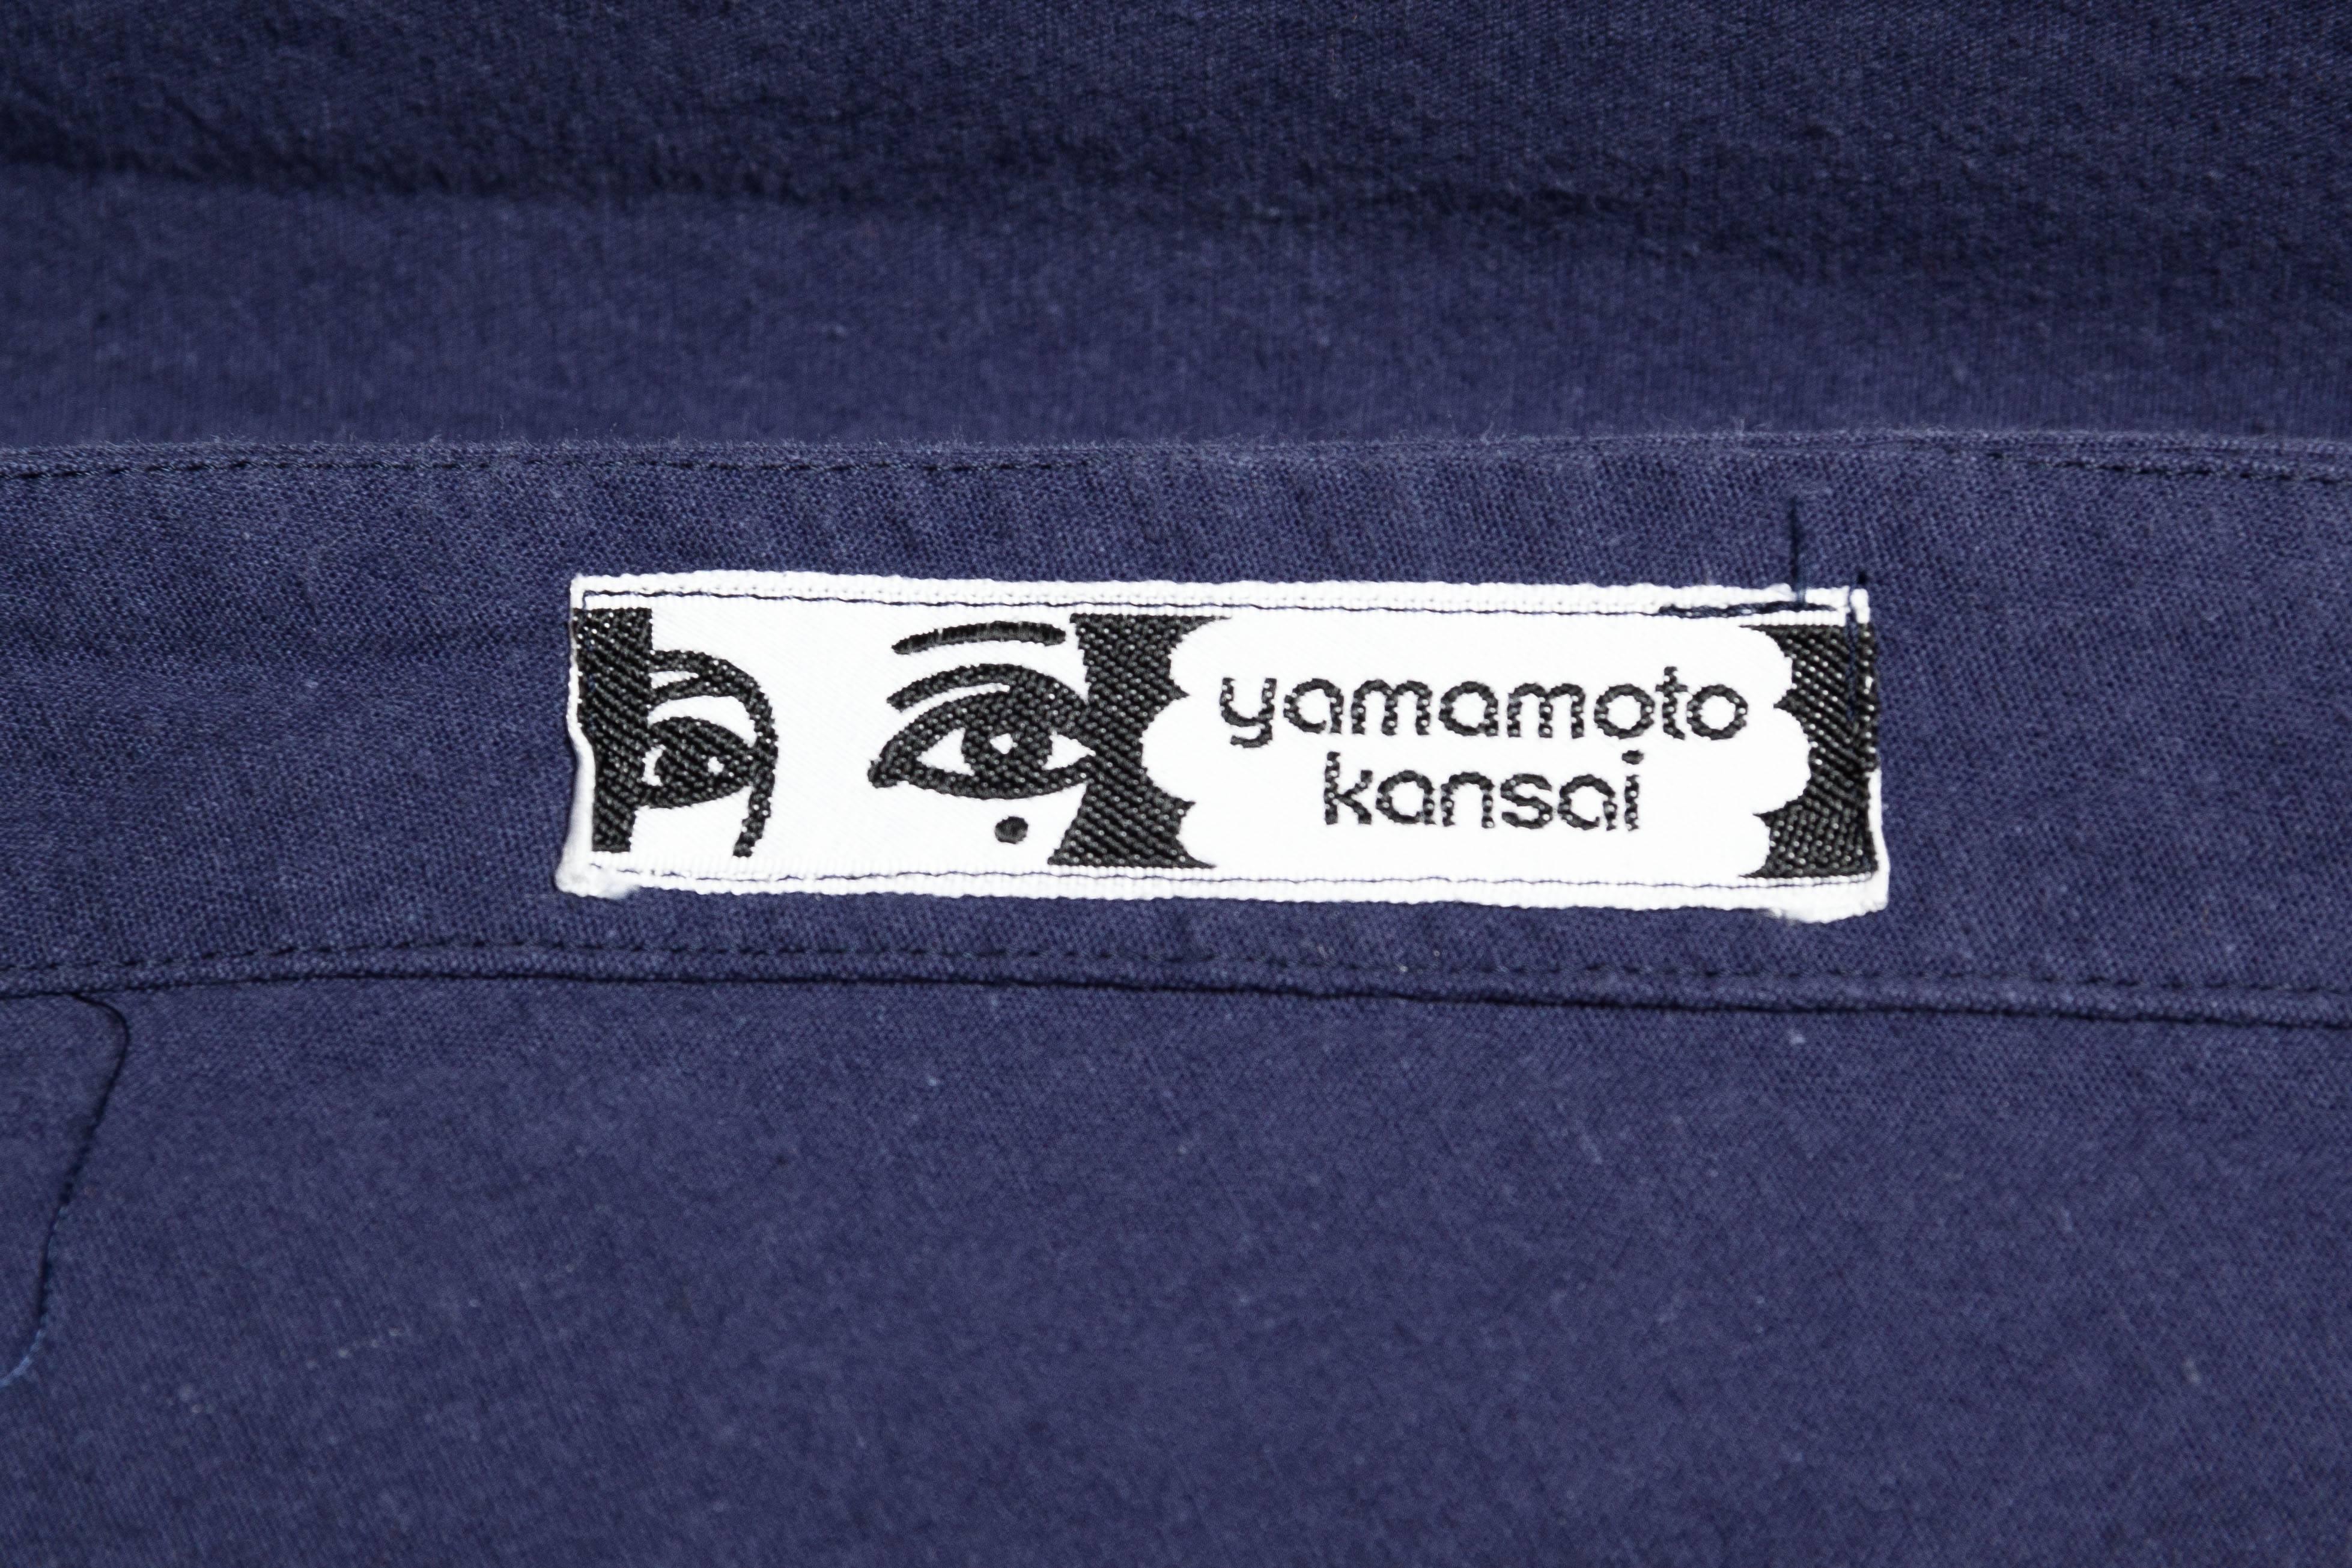 Kansai Yammamoto Japanese Mask Wrap Dress 6